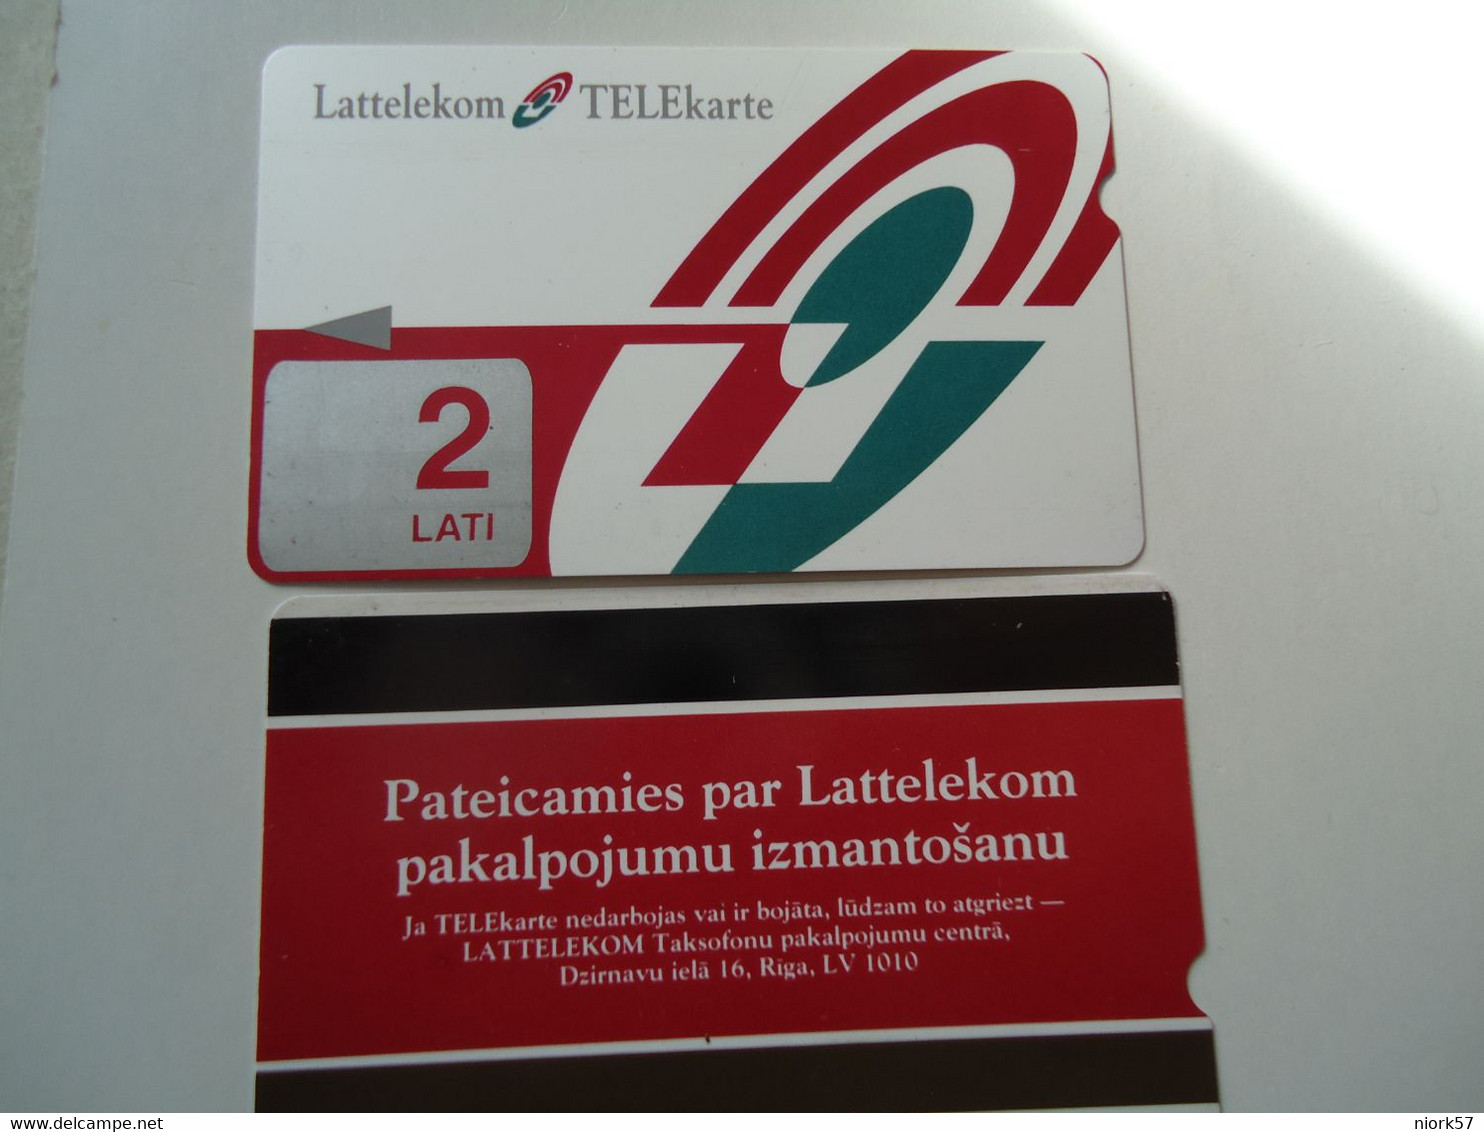 LATVIA USED  CARDS URMET OLD 2 LATI   ADVERSTISING - Latvia